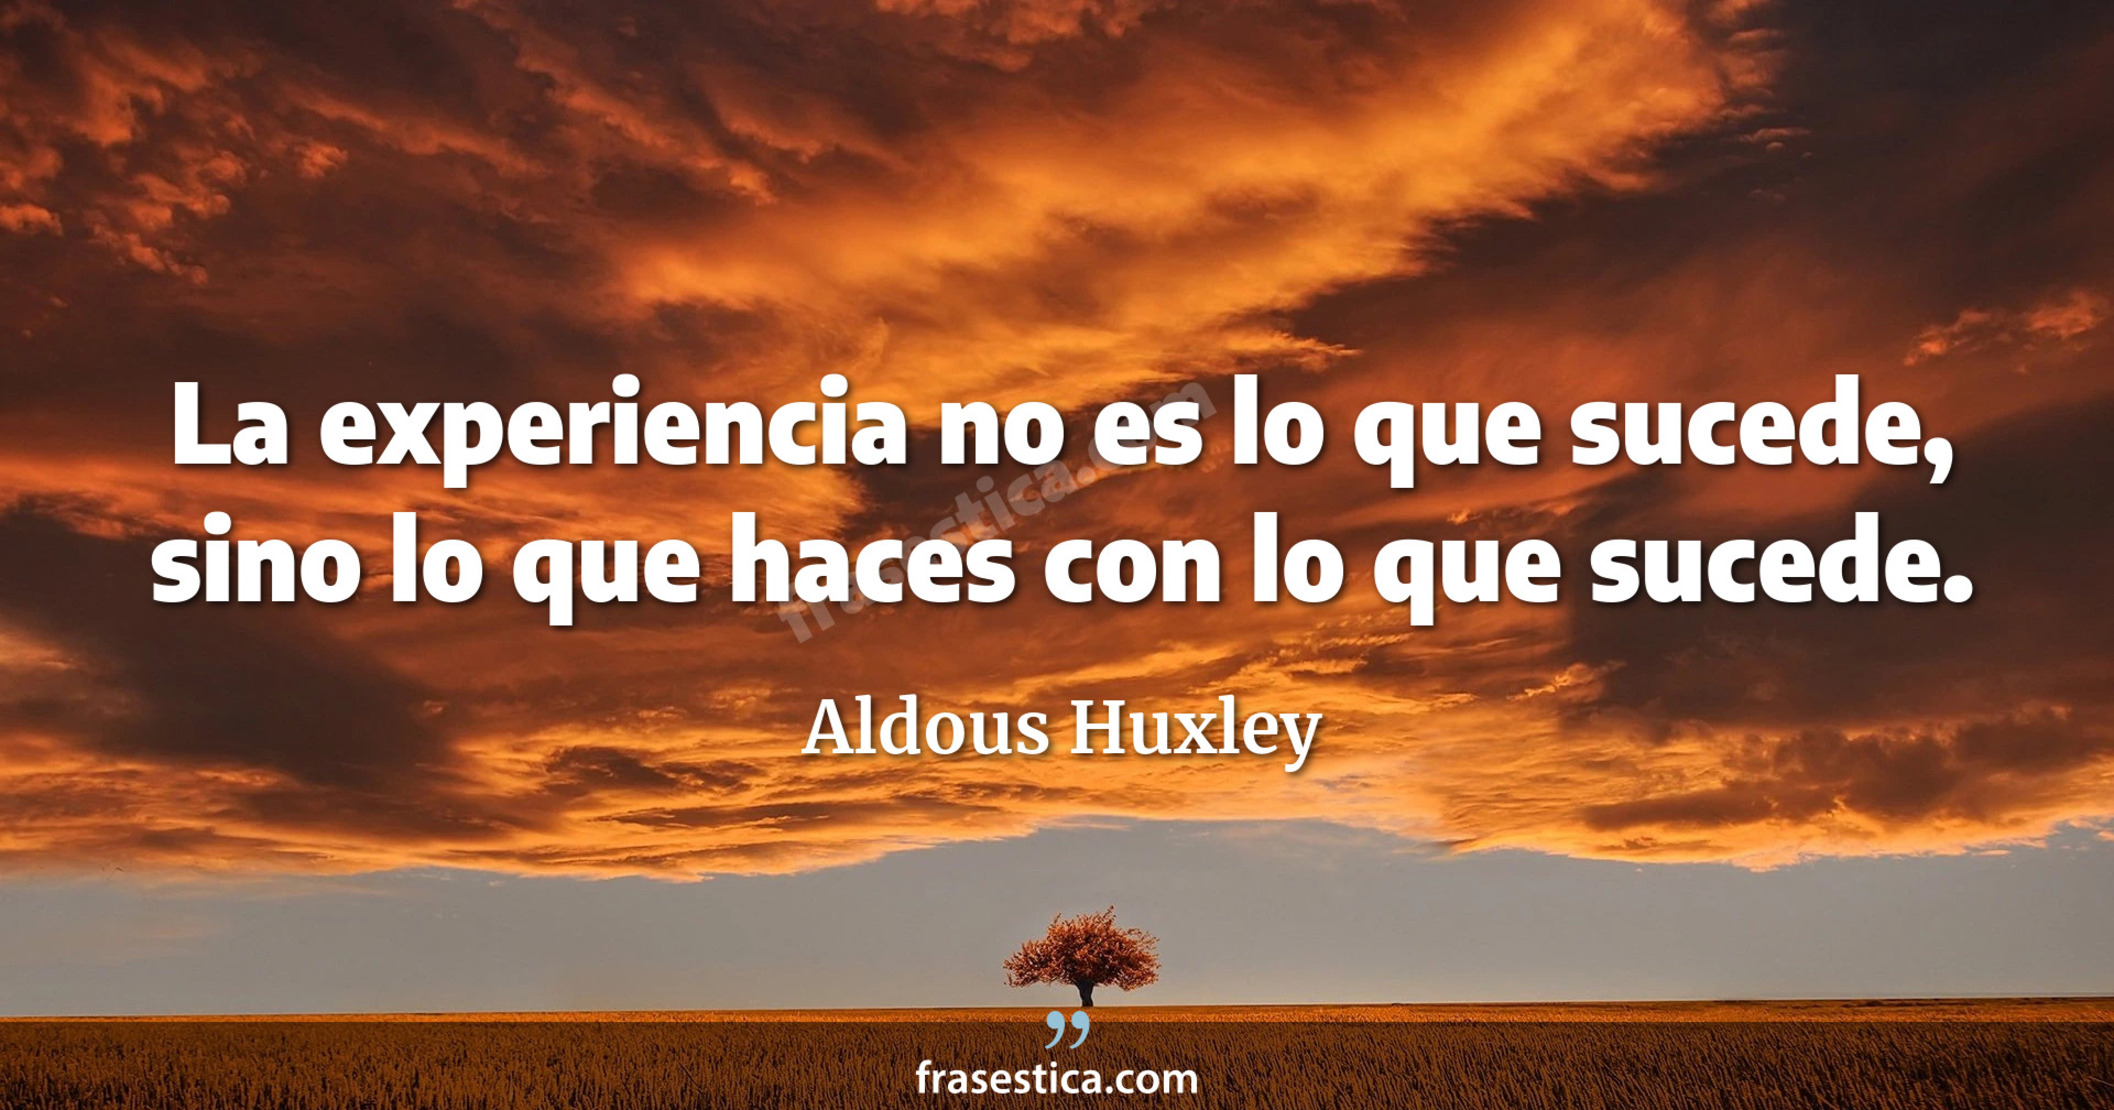 La experiencia no es lo que sucede, sino lo que haces con lo que sucede. - Aldous Huxley